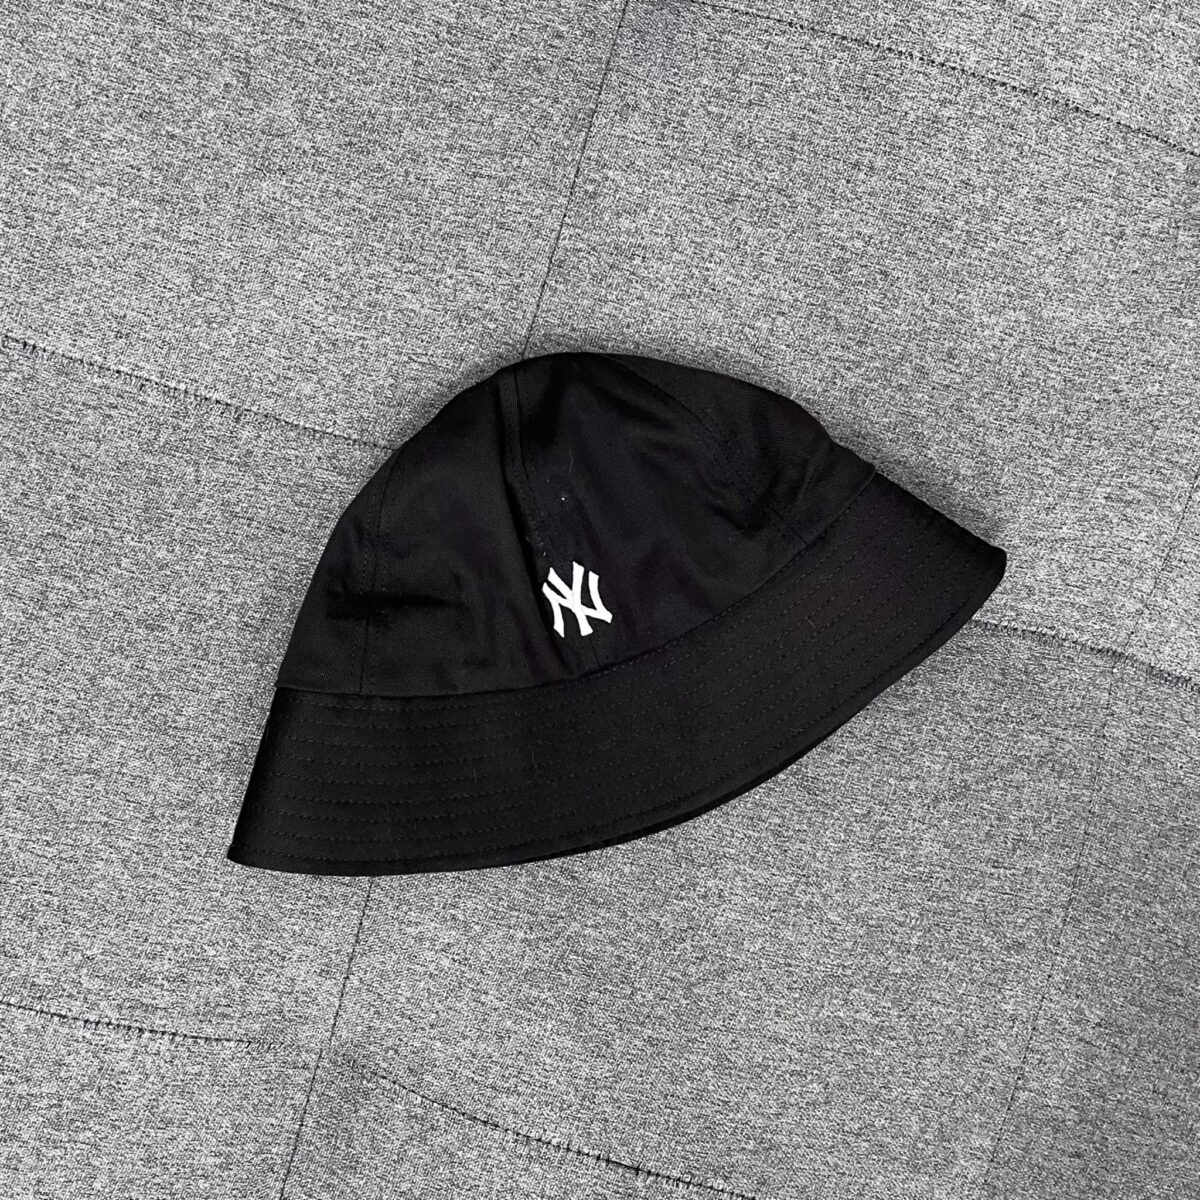 Mũ Bucket Hat MLB logo NY nhỏ – Whali Shop